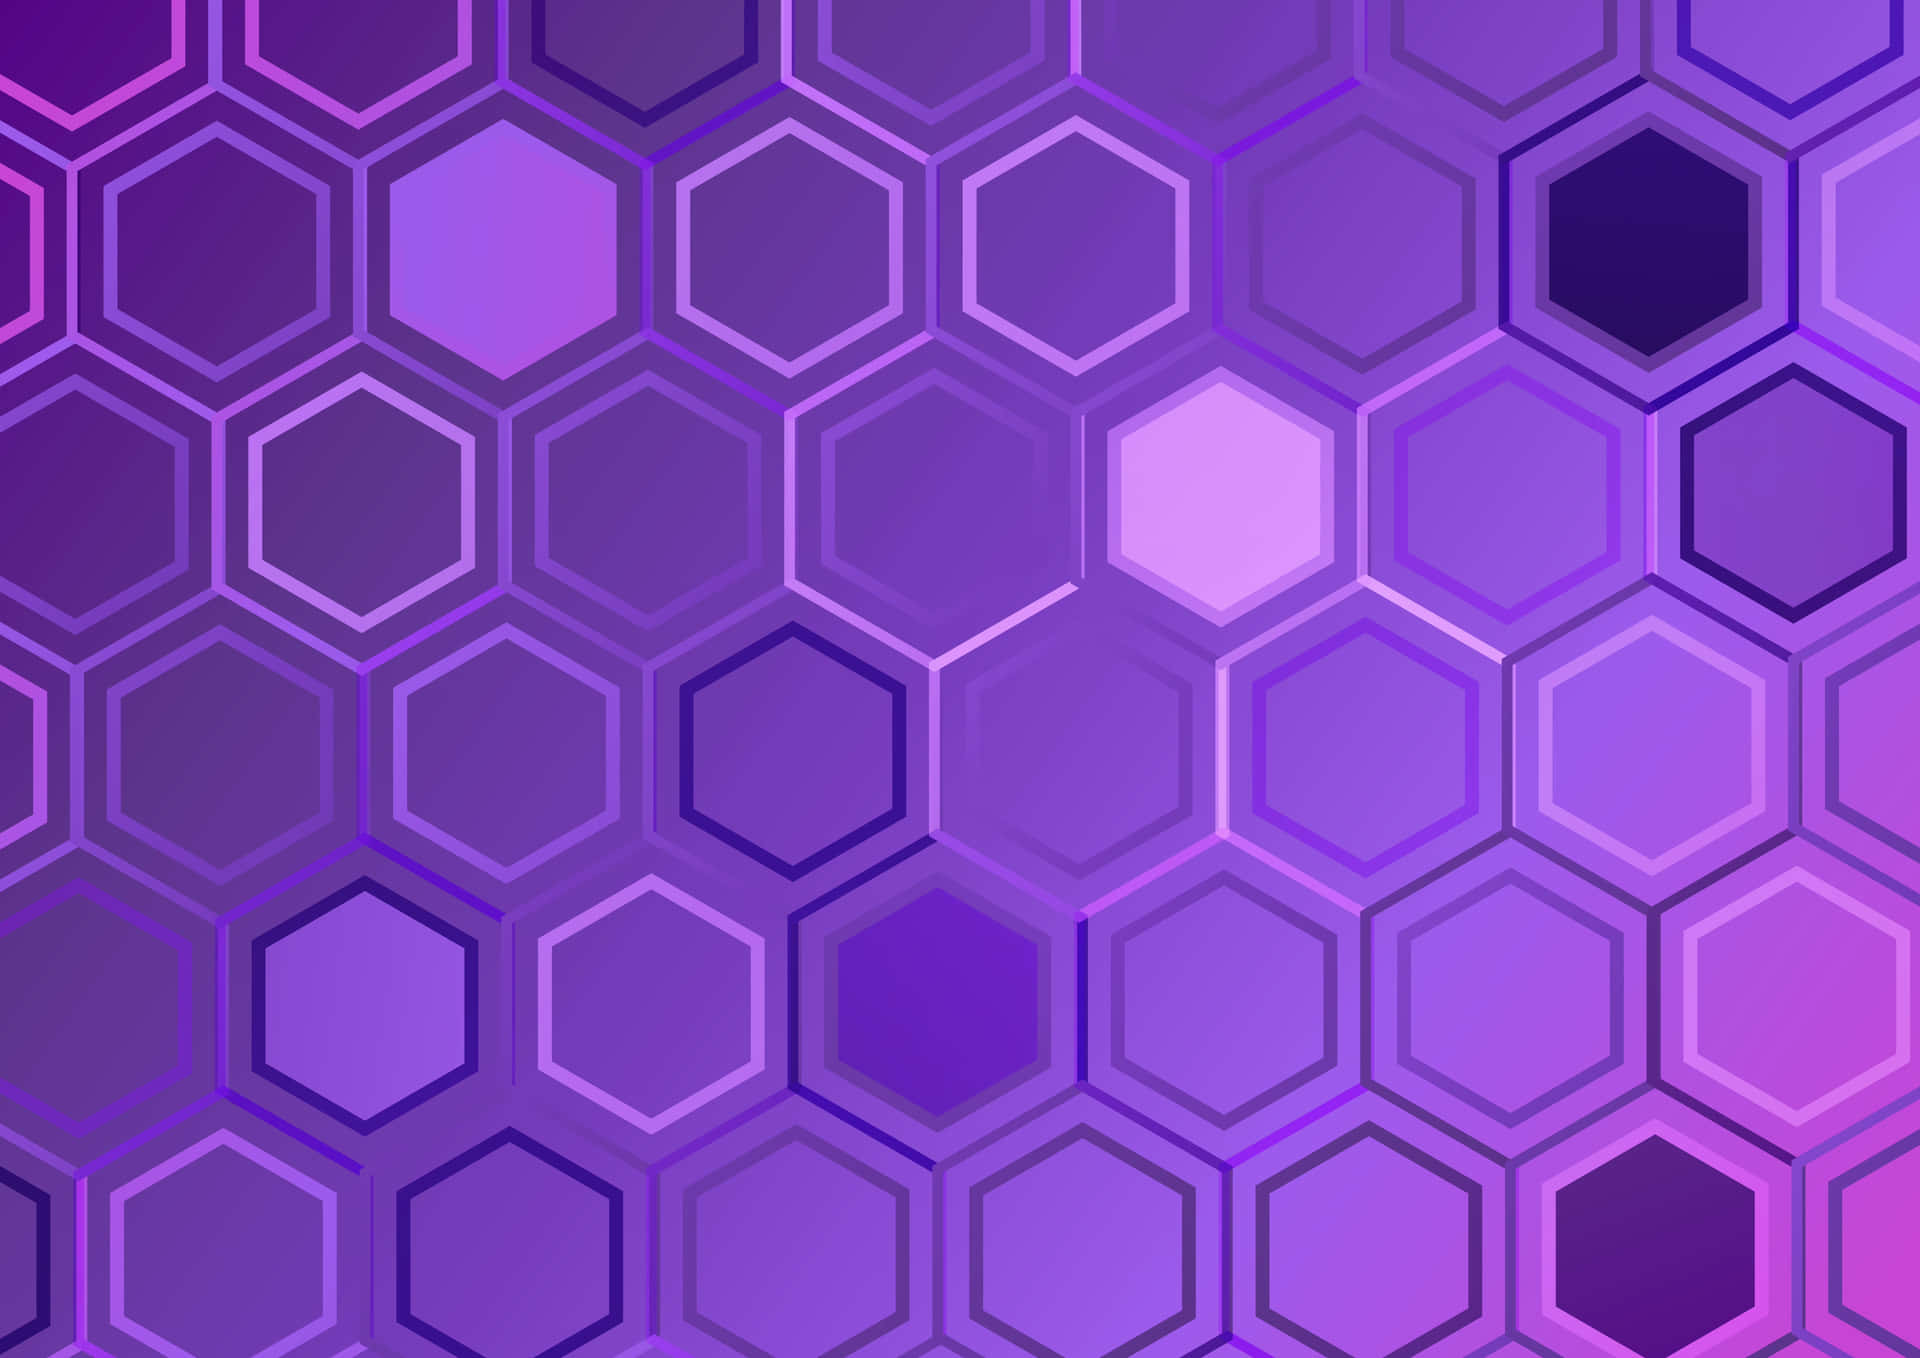 Geometrisktmönster Av Hexagoner I Dynamiska, Iögonfallande Färger.